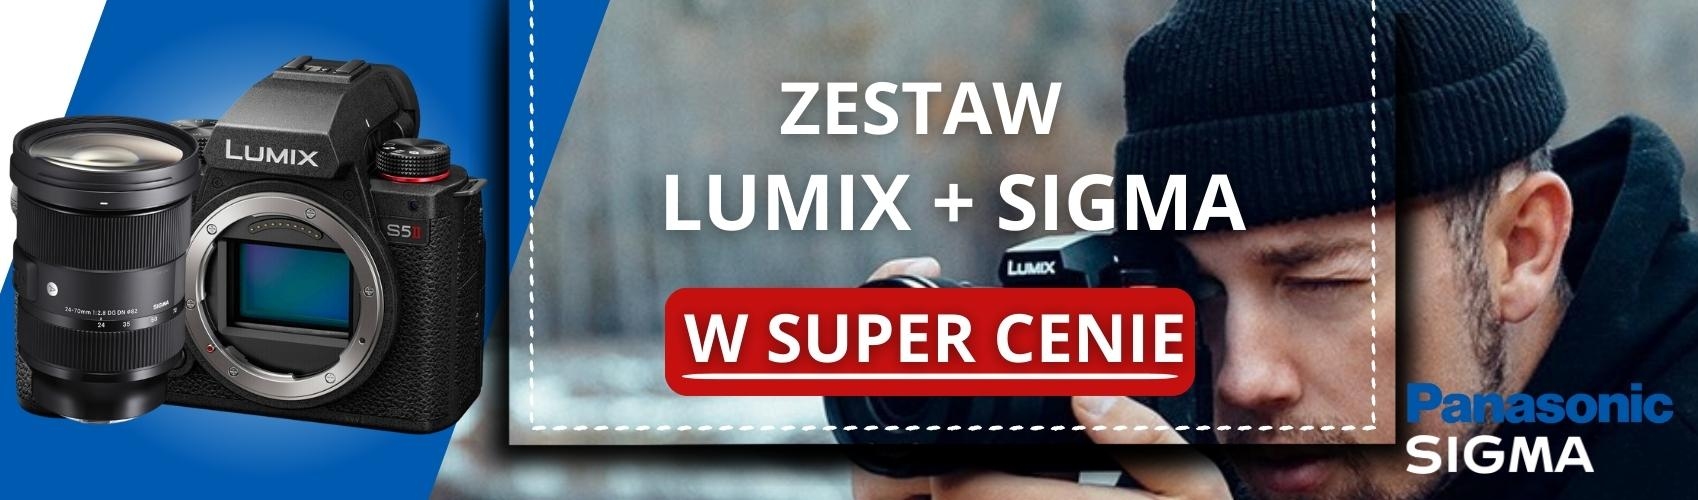 Co za połączenie! Zgarnij teraz teraz aparat Panasonic Lumix w zestawie z obiektywem Sigma w super okazyjnych cenach! 